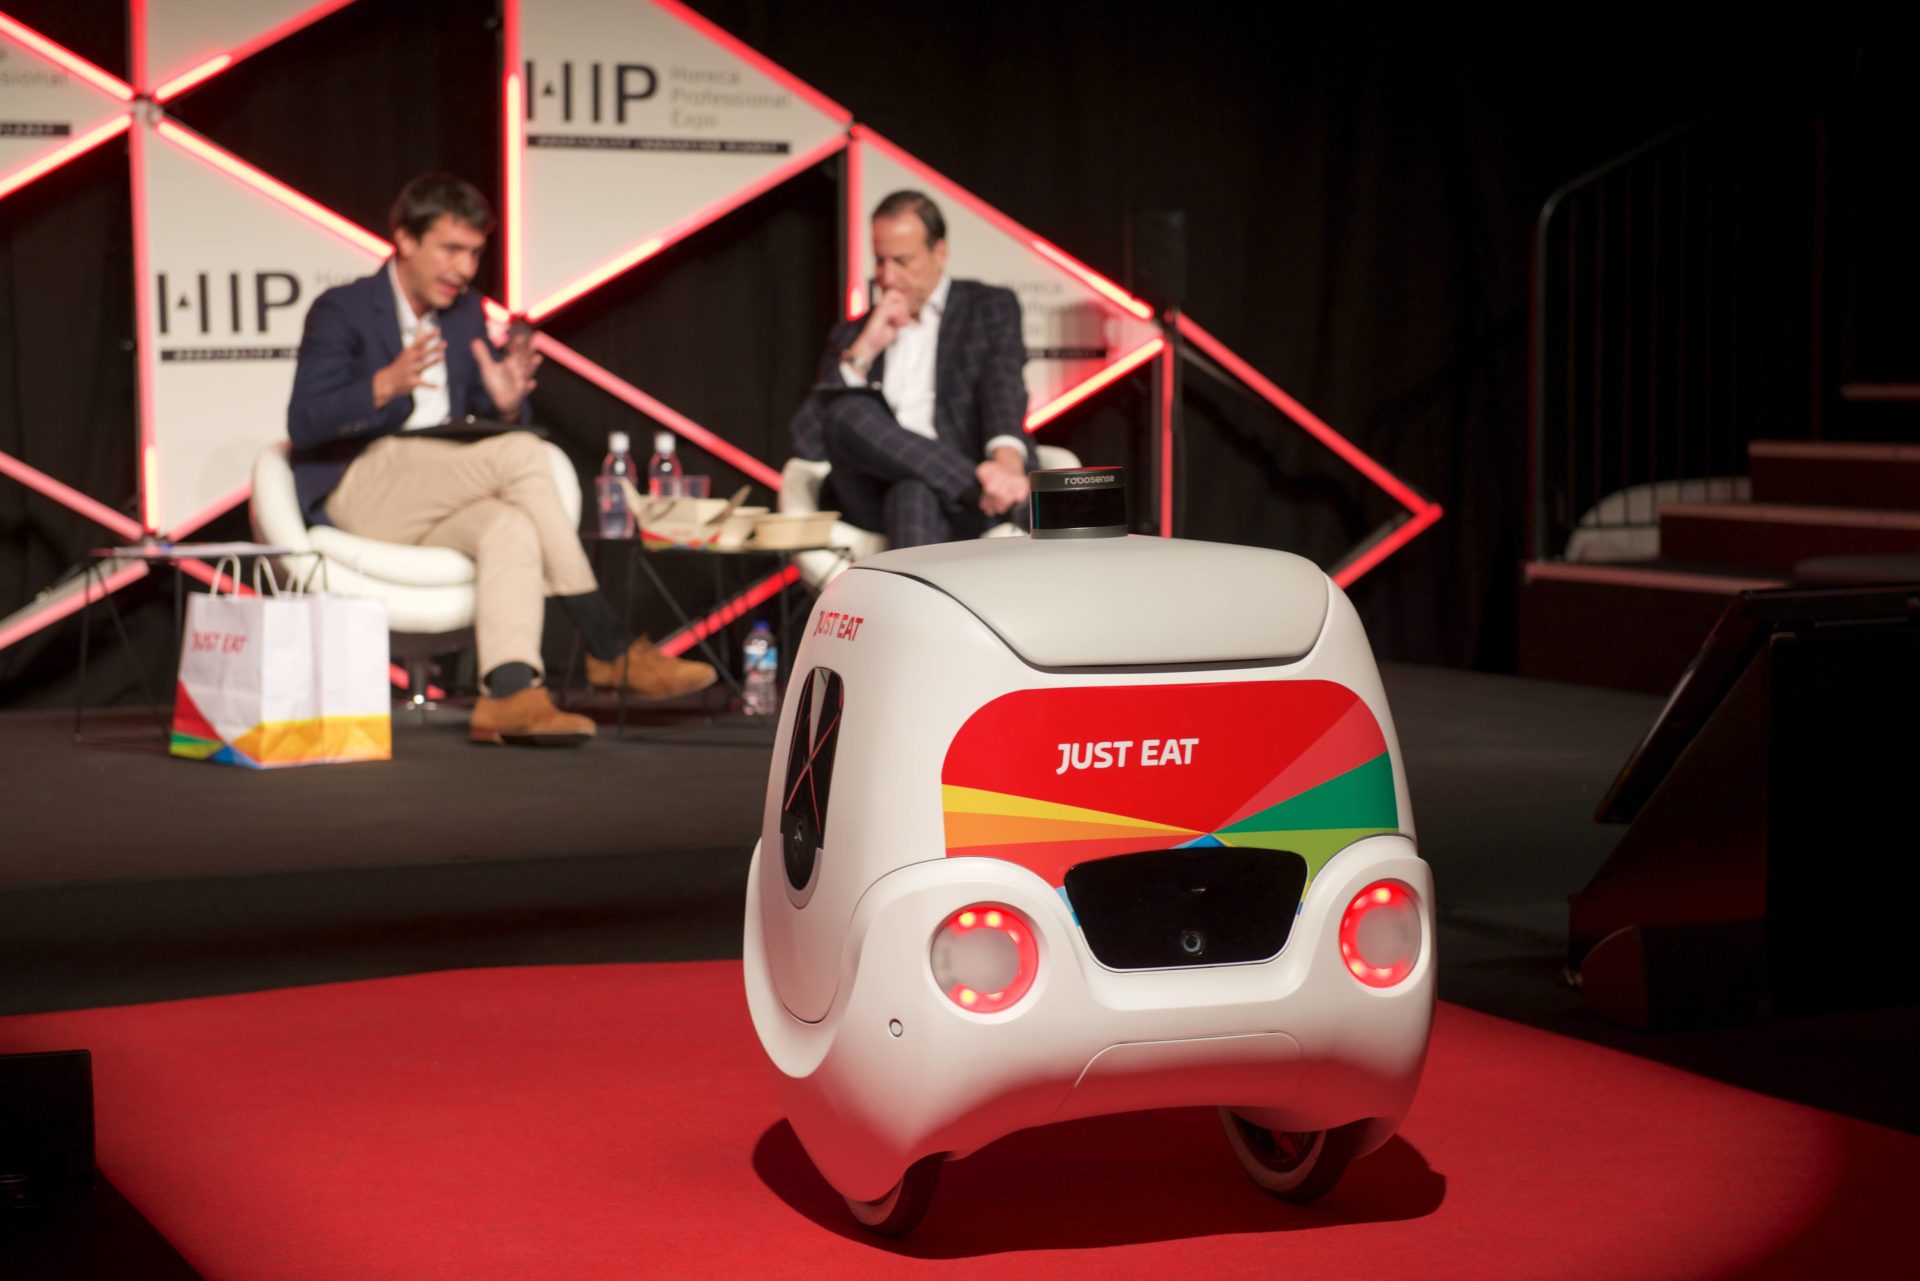 robots cocina Foodservice Robotics Pioneers, el foro mundial de robótica para hostelería, vuelve a HIP